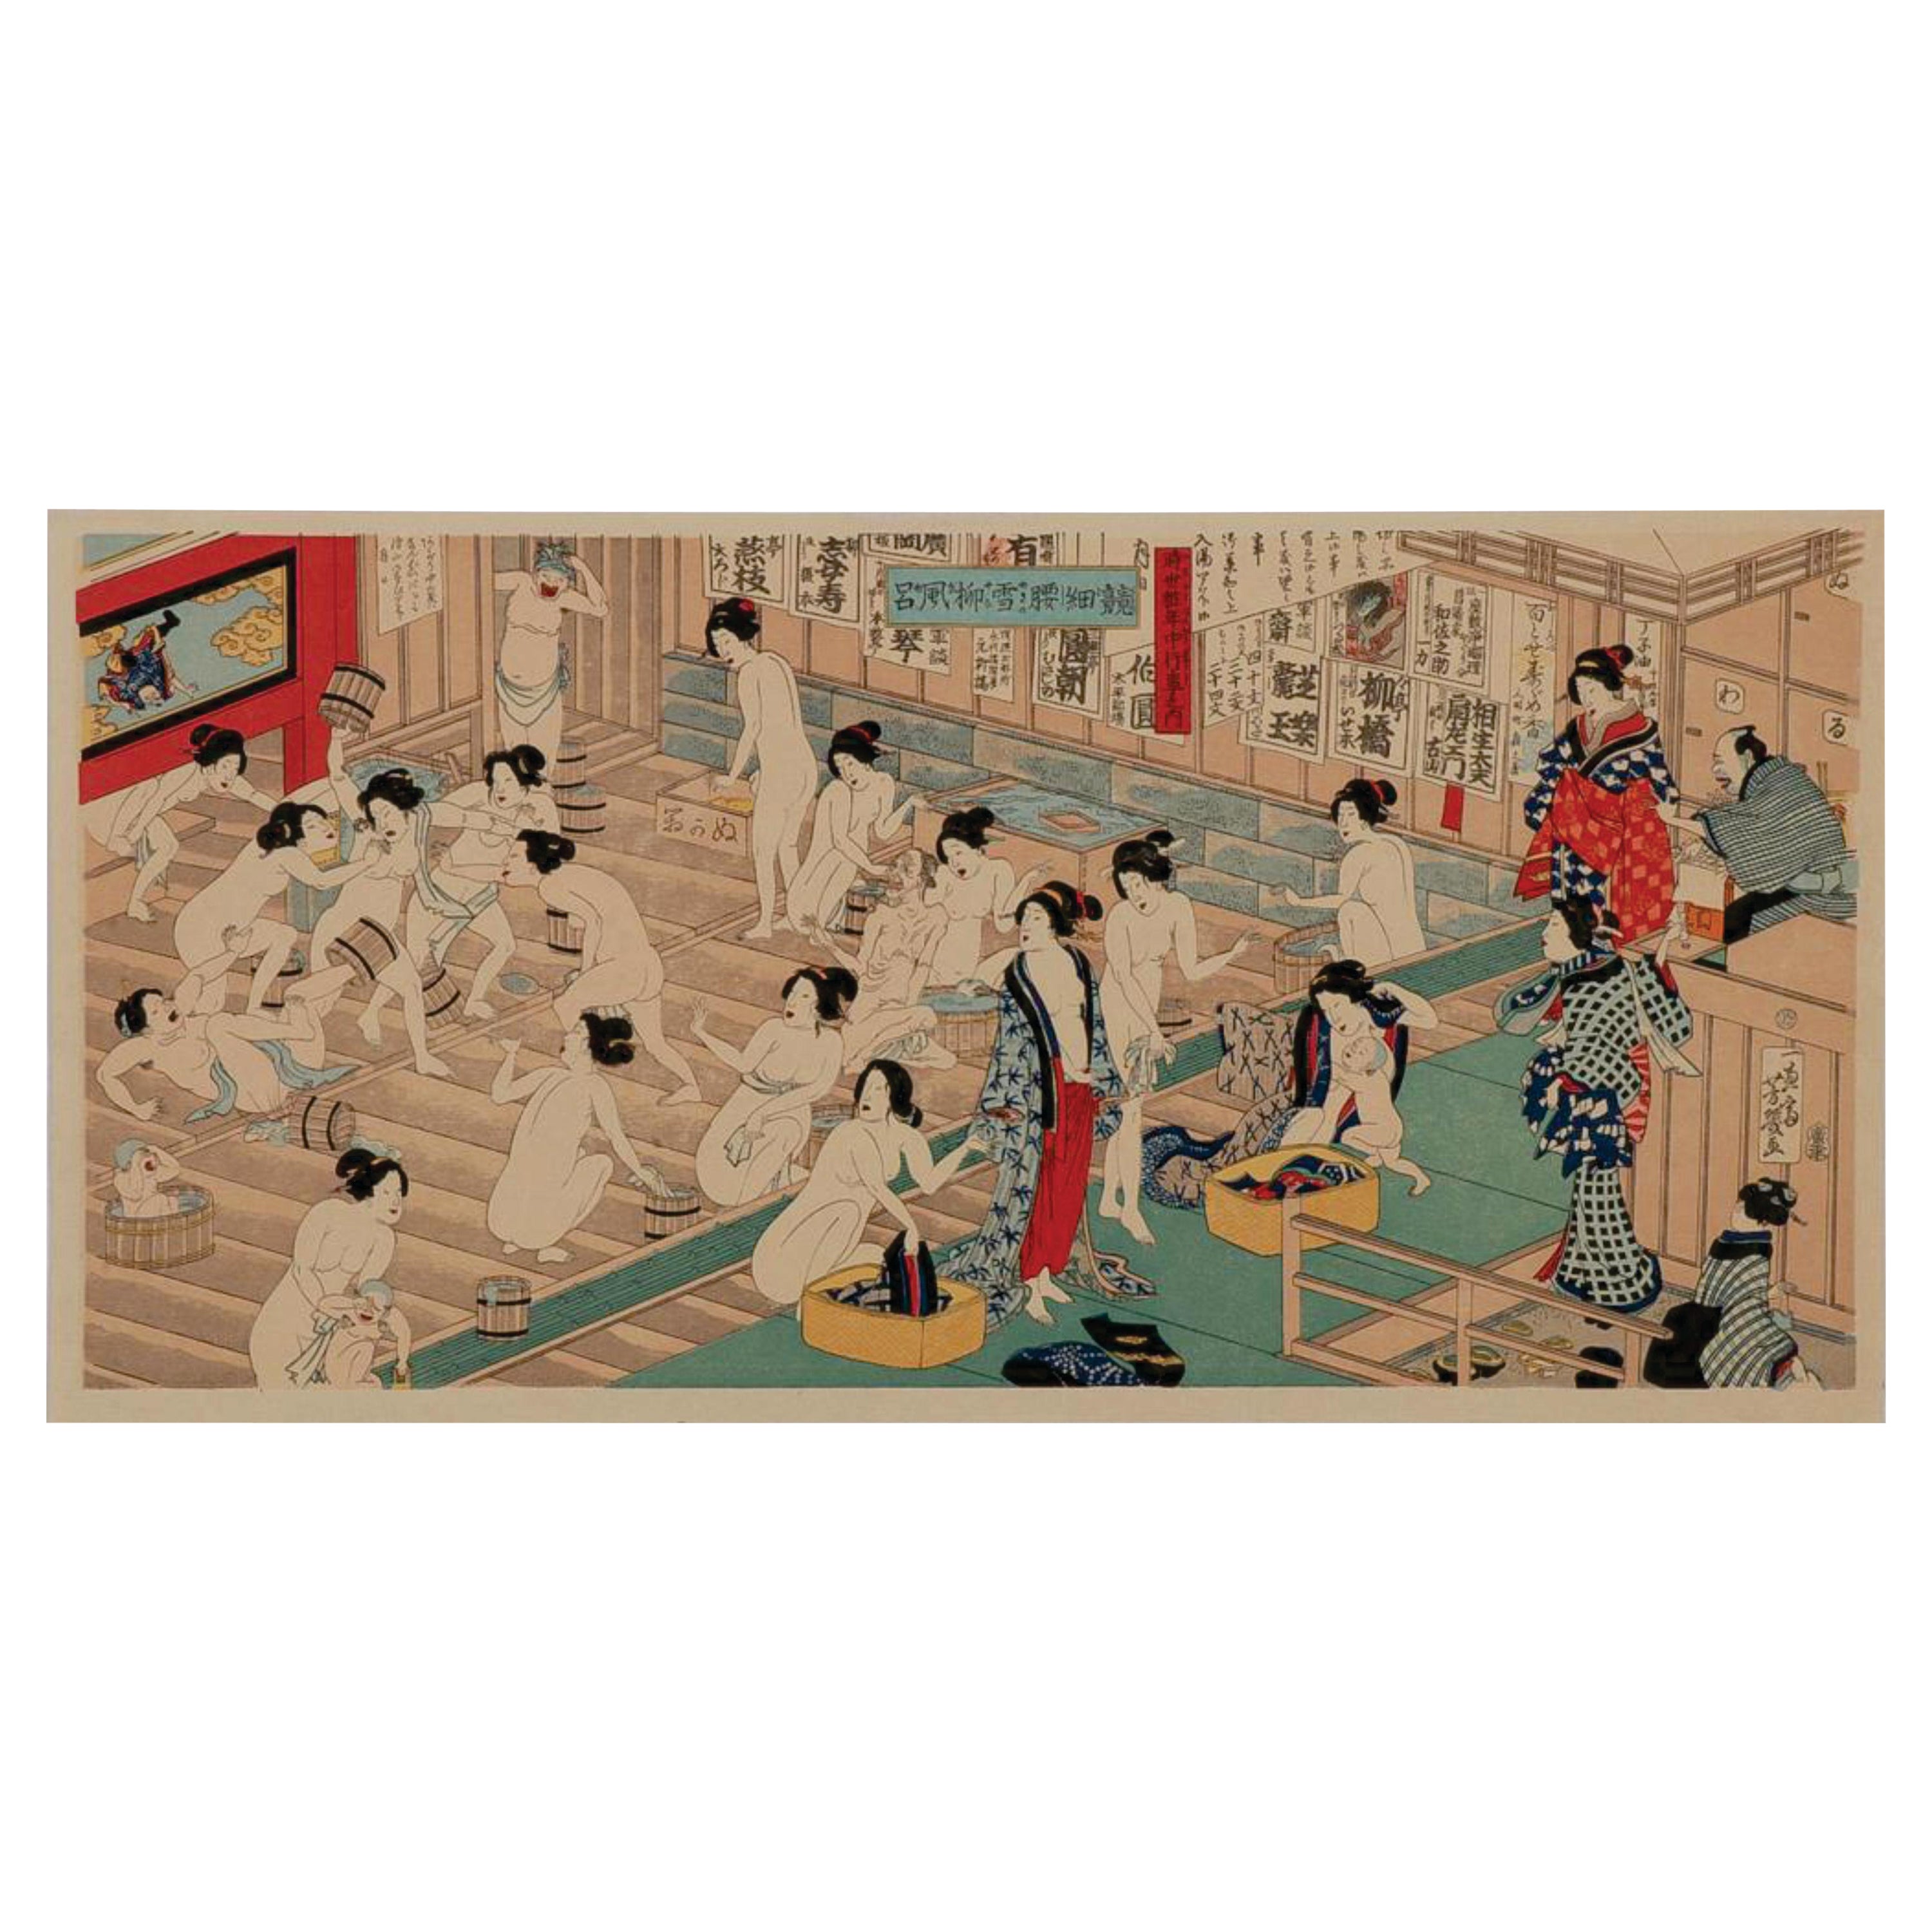 Gravure sur bois japonaise par Utagawa Yoshiika 落合芳幾  '1833-1904'